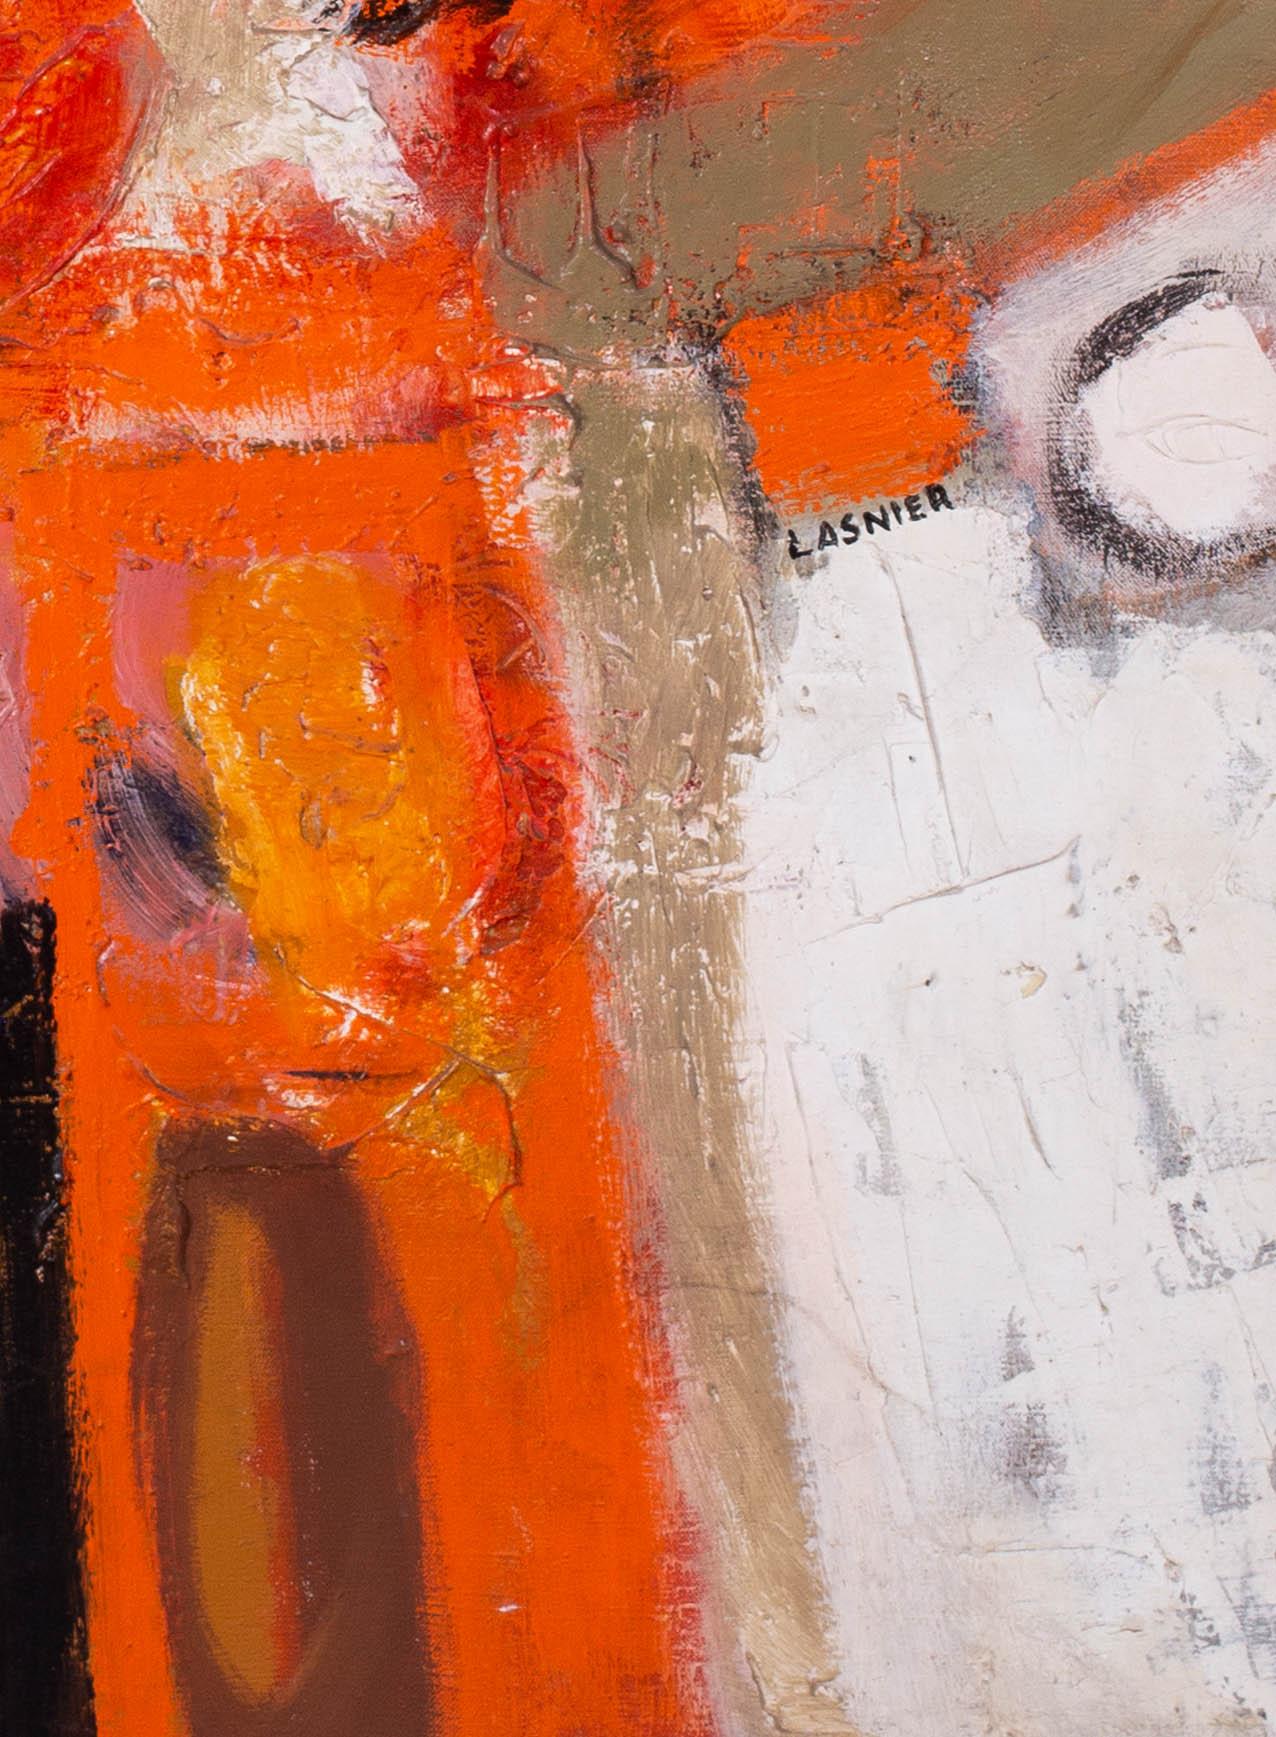 Une grande peinture à l'huile abstraite française de Jean Maurice Lasnier - Orange Abstract Painting par Jean Maurice Lasnier 